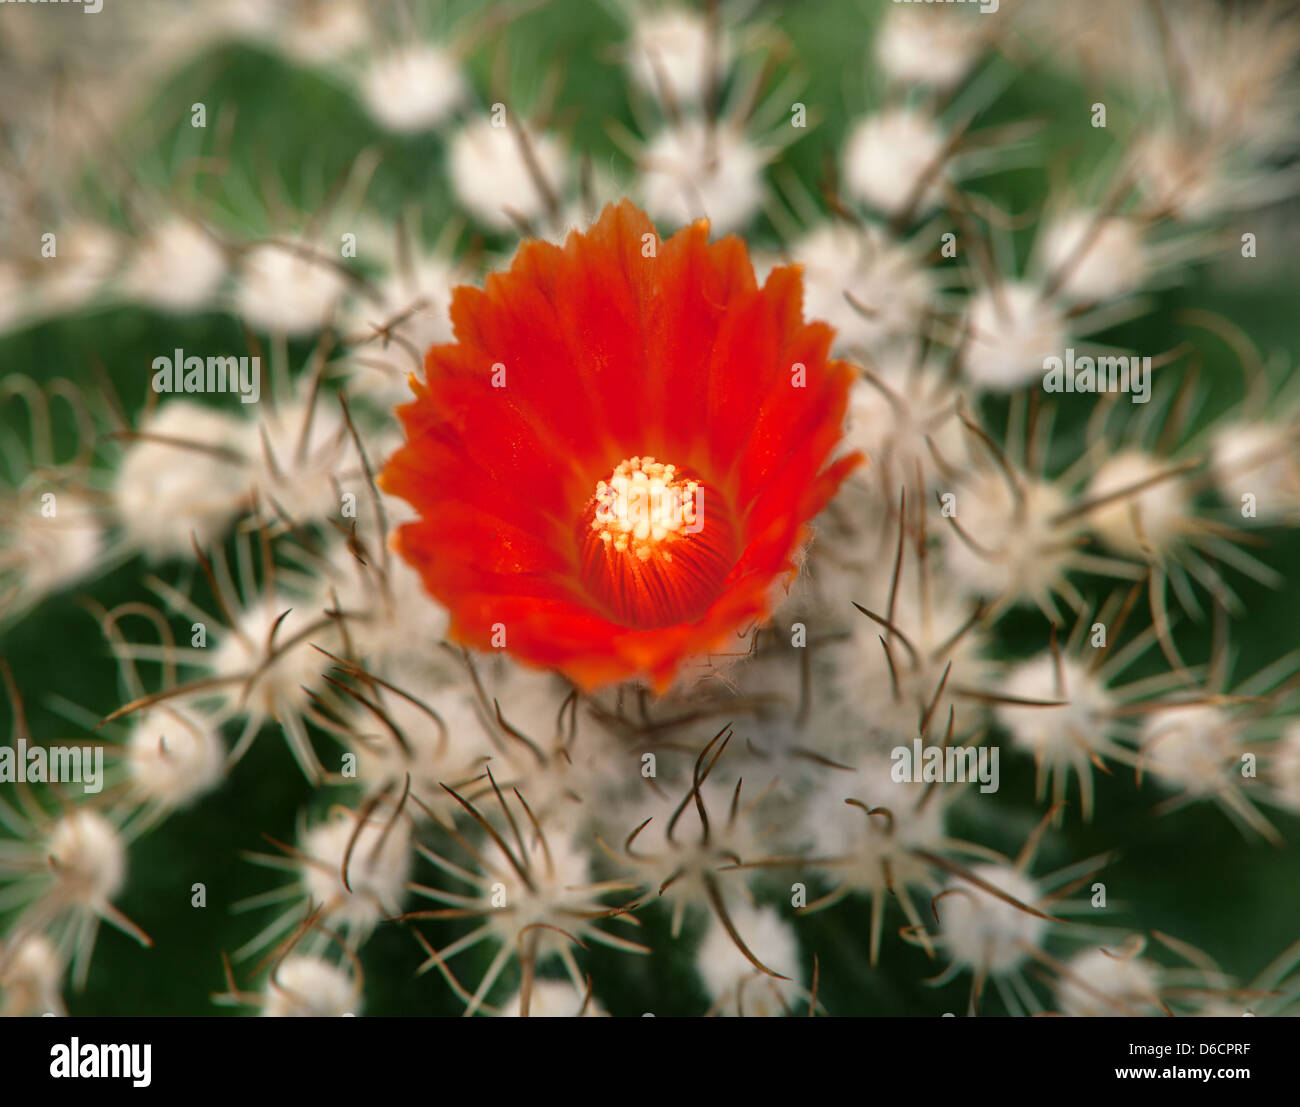 La foto de cactus con gran flor roja Foto de stock